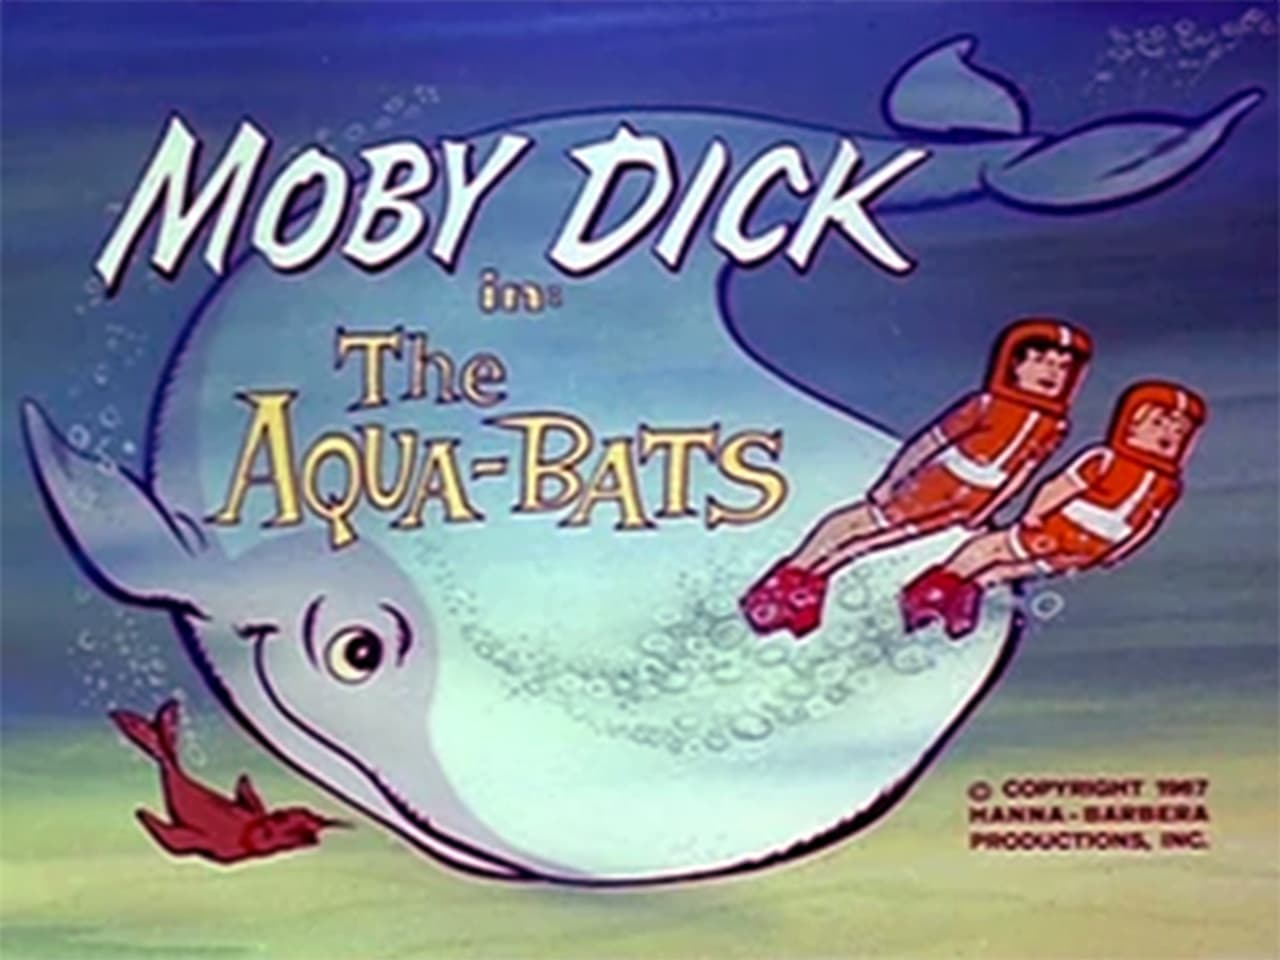 The AquaBats